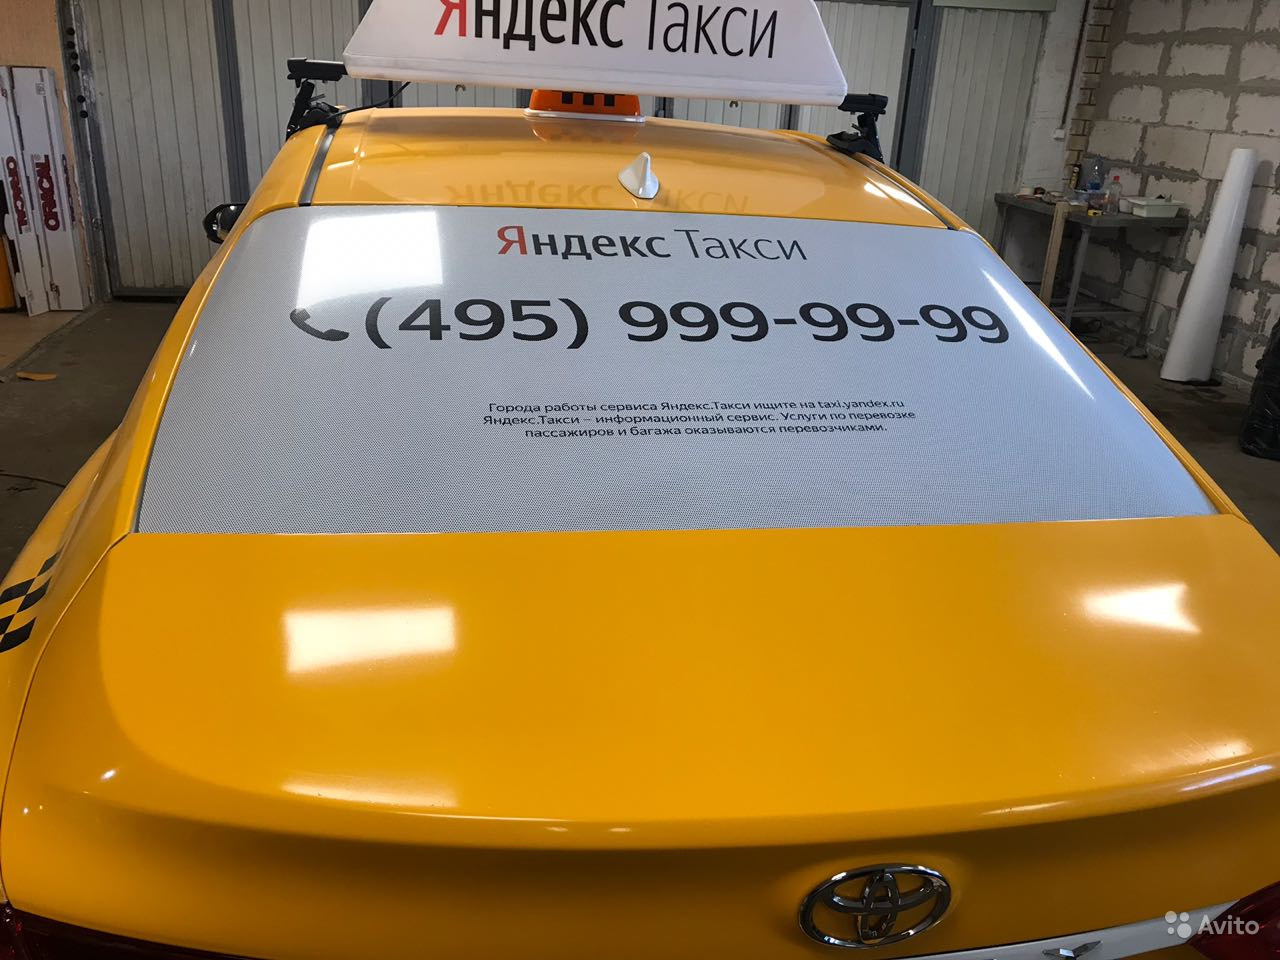 Яндекс такси оклейка сзади